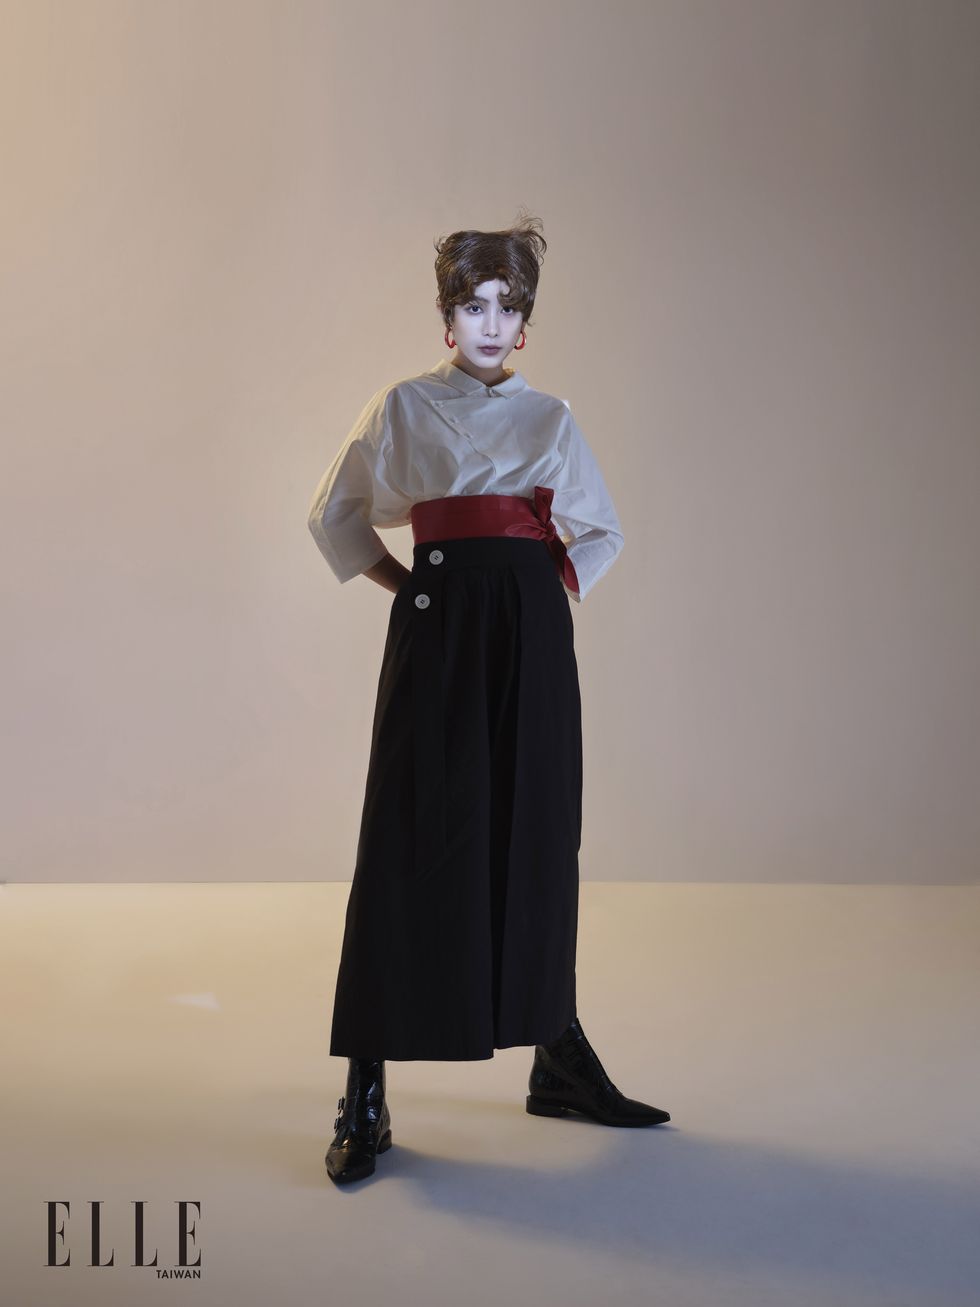 金鐘影后温貞菱穿著台灣設計師品牌vïga wang服裝拍攝ELLE時尚大片。